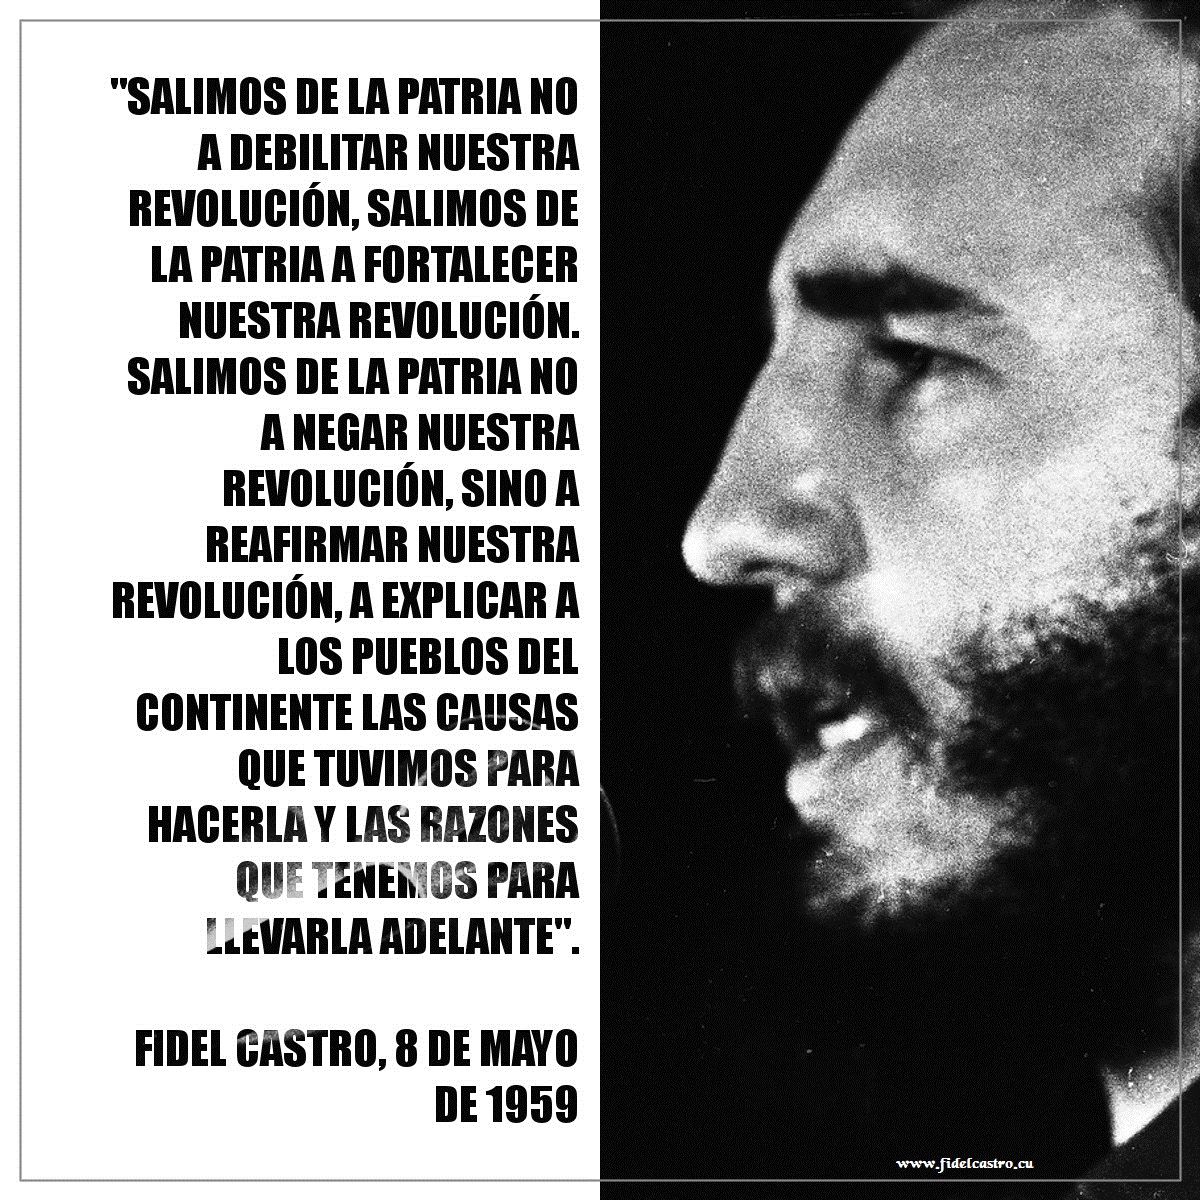 🎙️#Fidelcastro: “Salimos de la patria no a debilitar nuestra Revolución, salimos de la patria a fortalecer nuestra Revolución. Salimos de la patria no a negar nuestra Revolución, sino a reafirmar nuestra Revolución”. 👉bit.ly/2KFOiqS